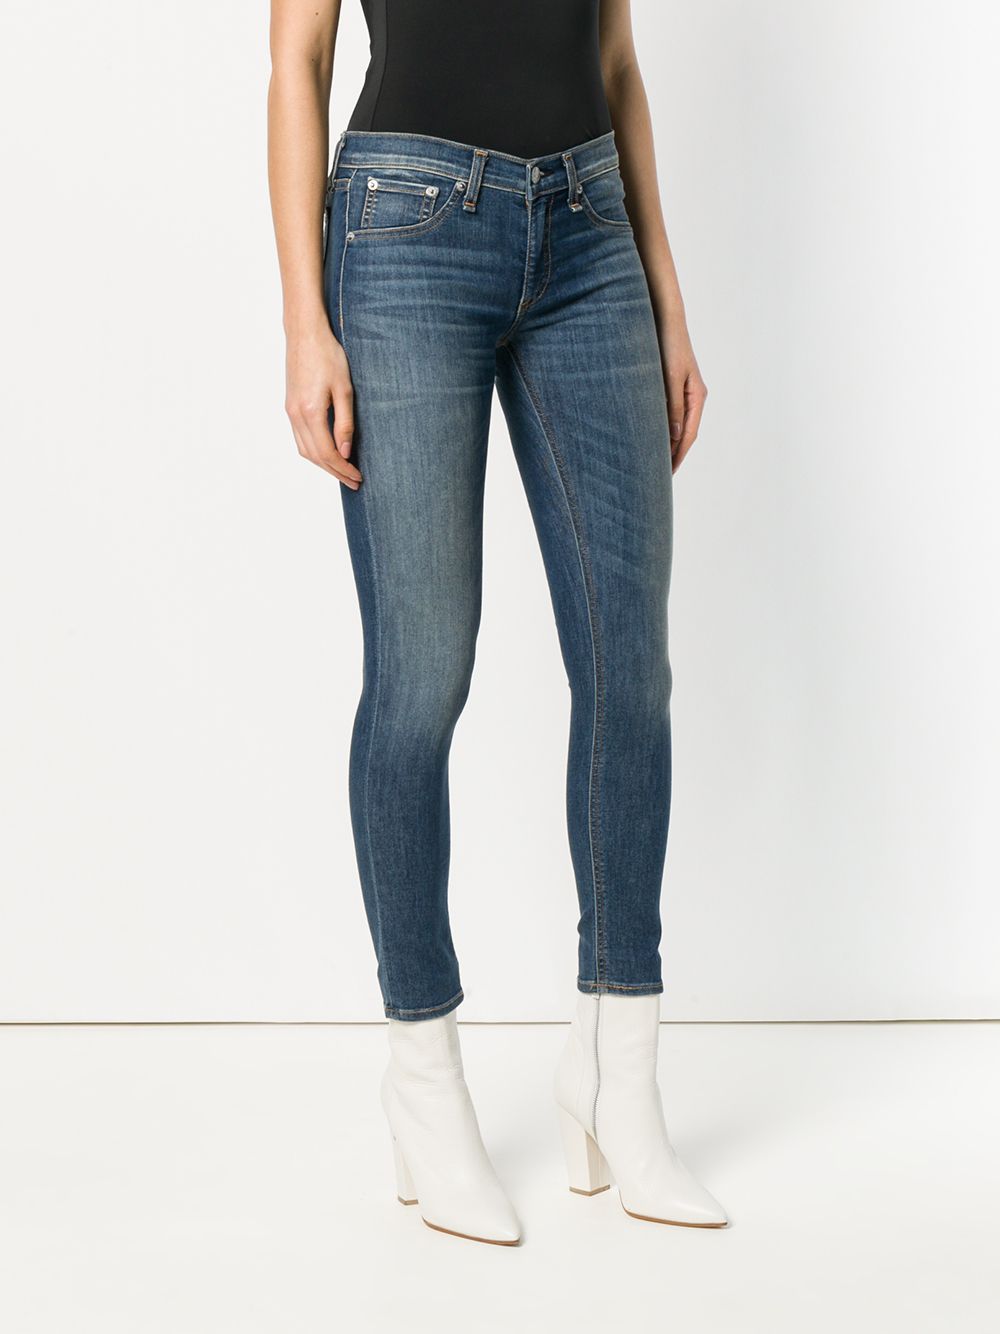 фото Rag & Bone облегающие джинсы с низкой посадкой